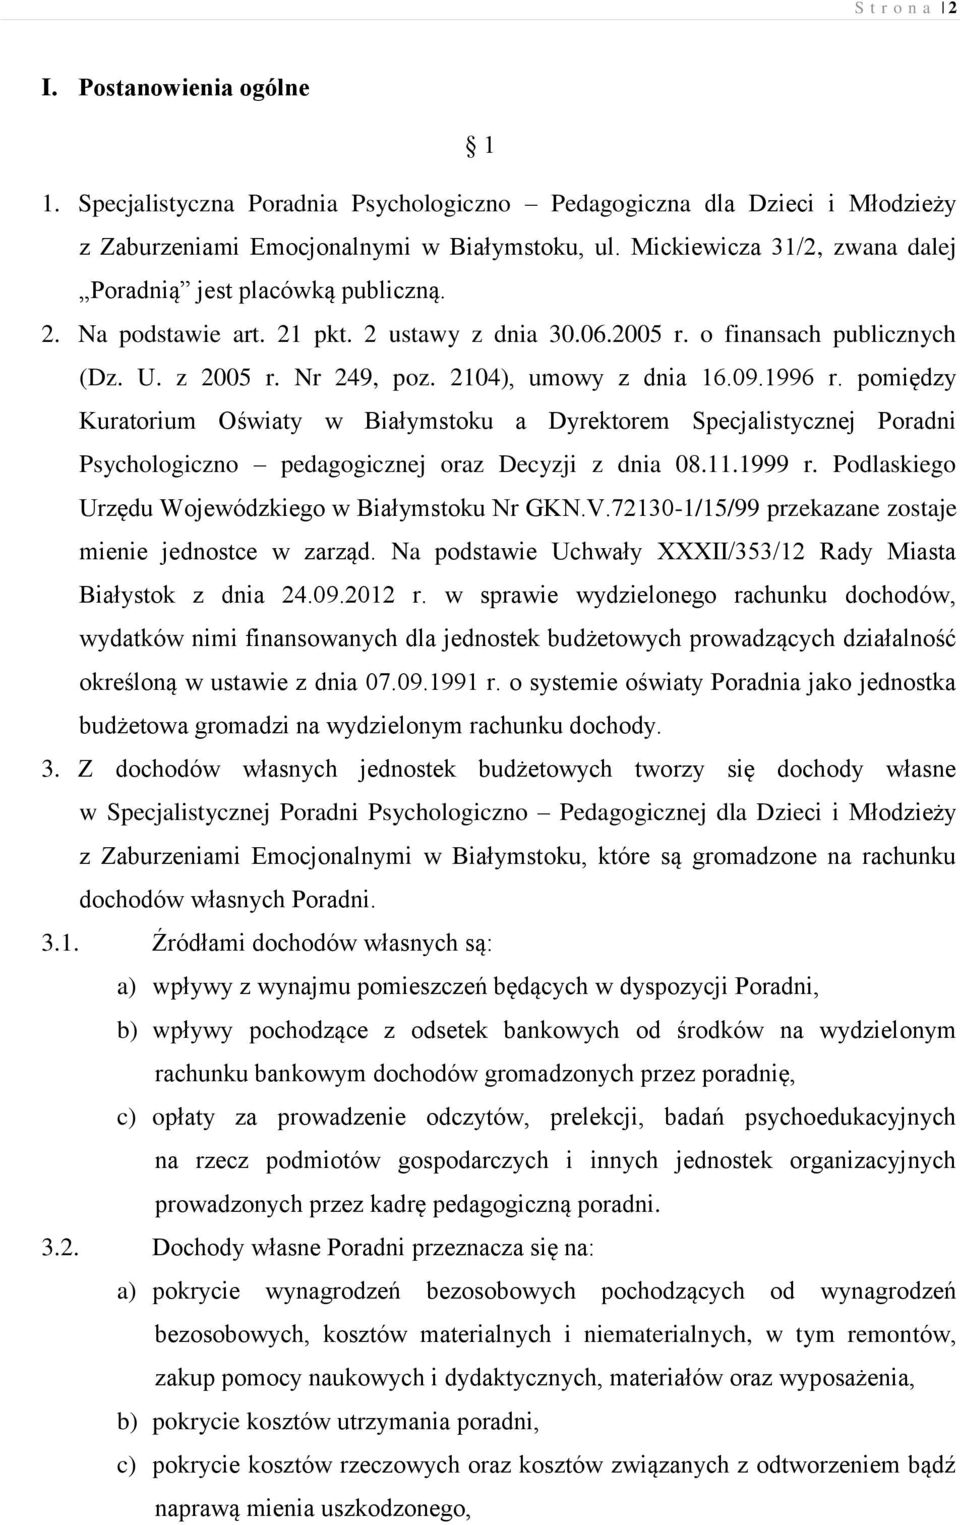 2104), umowy z dnia 16.09.1996 r. pomiędzy Kuratorium Oświaty w Białymstoku a Dyrektorem Specjalistycznej Poradni Psychologiczno pedagogicznej oraz Decyzji z dnia 08.11.1999 r.